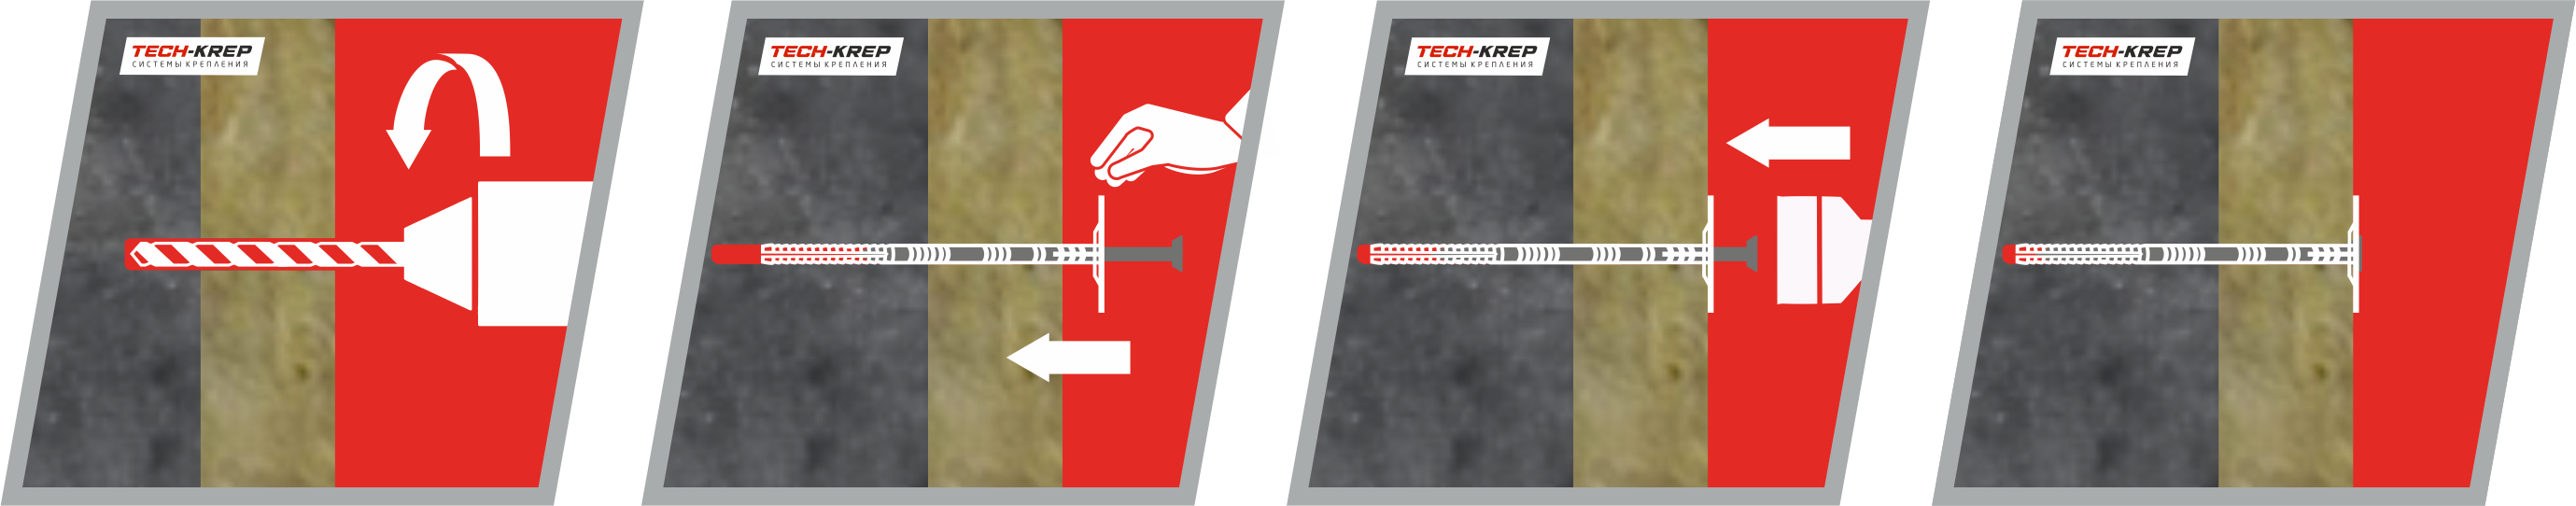 Схема крепления теплоизоляционного материала к бетонному основанию дюбелем IZM Tech-KREP